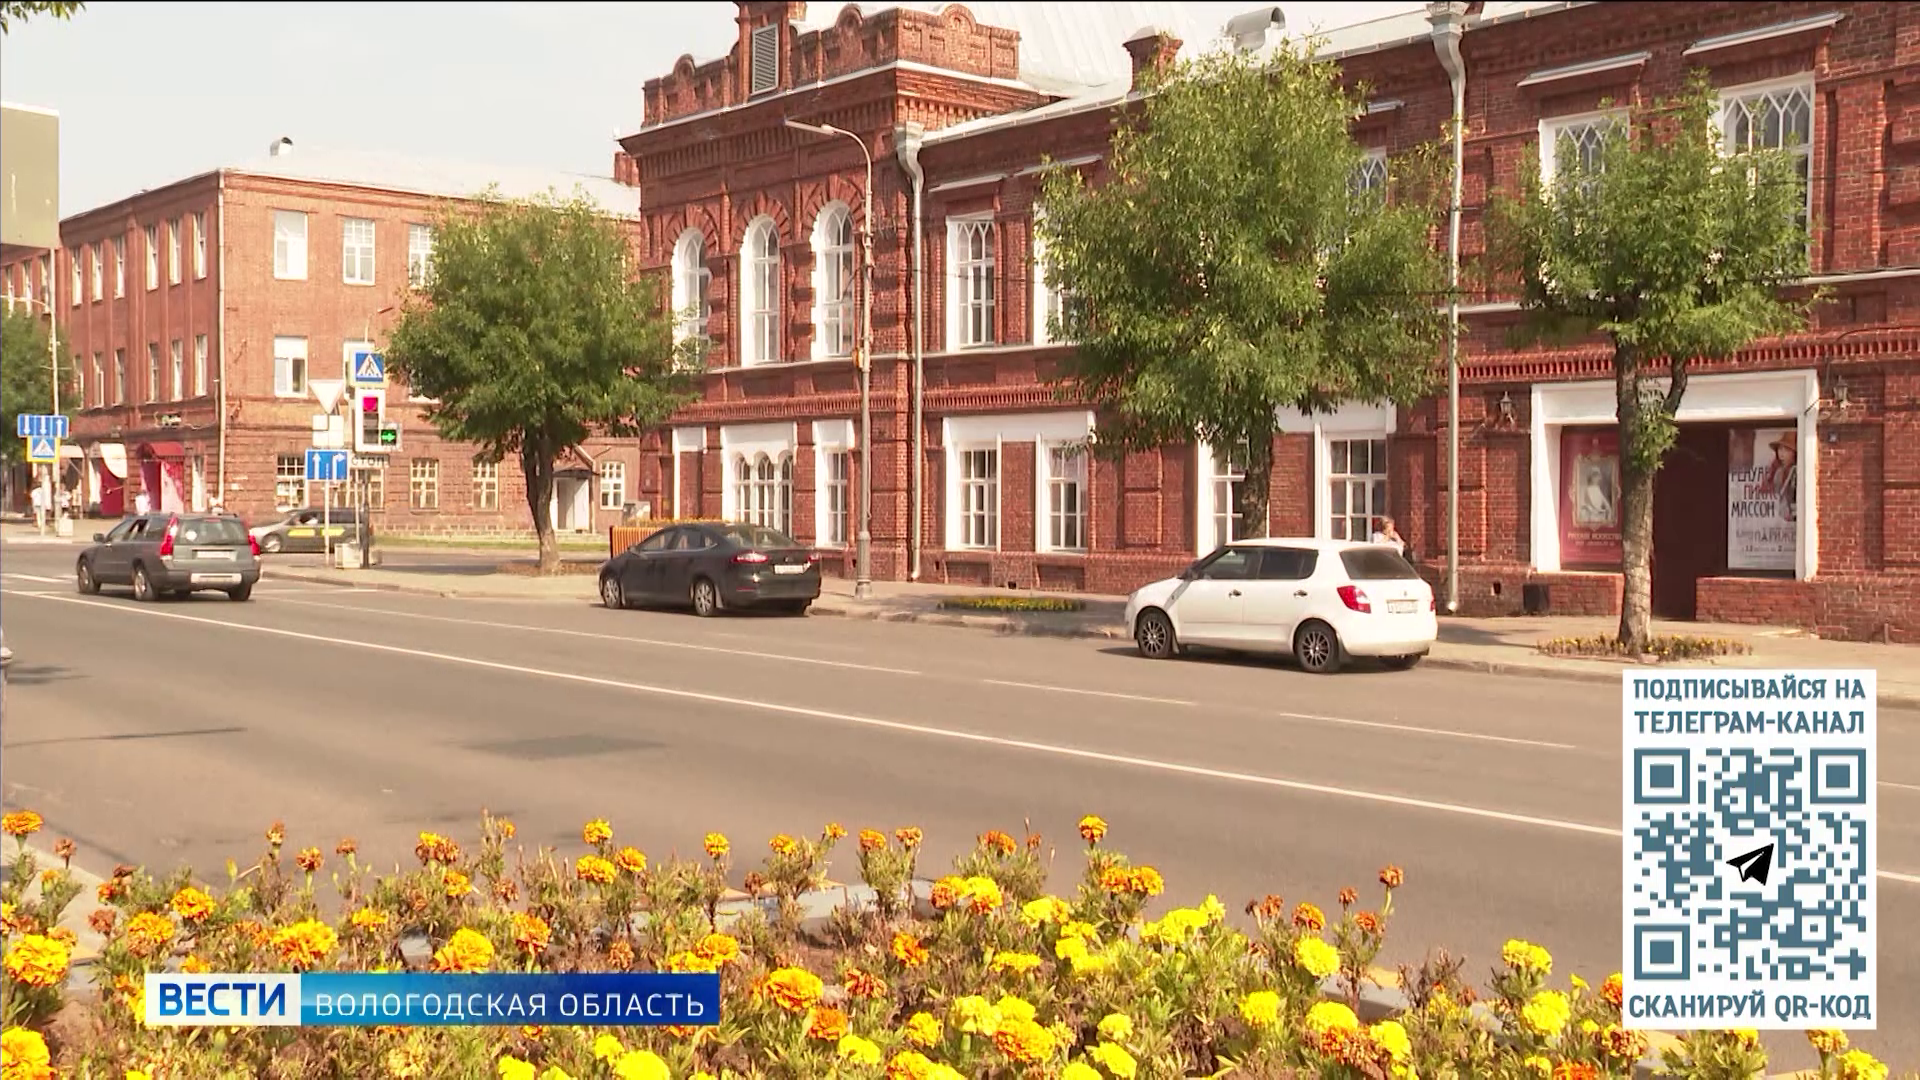 Правительство усилит взаимодействие с малым и средним бизнесом Вологодской области